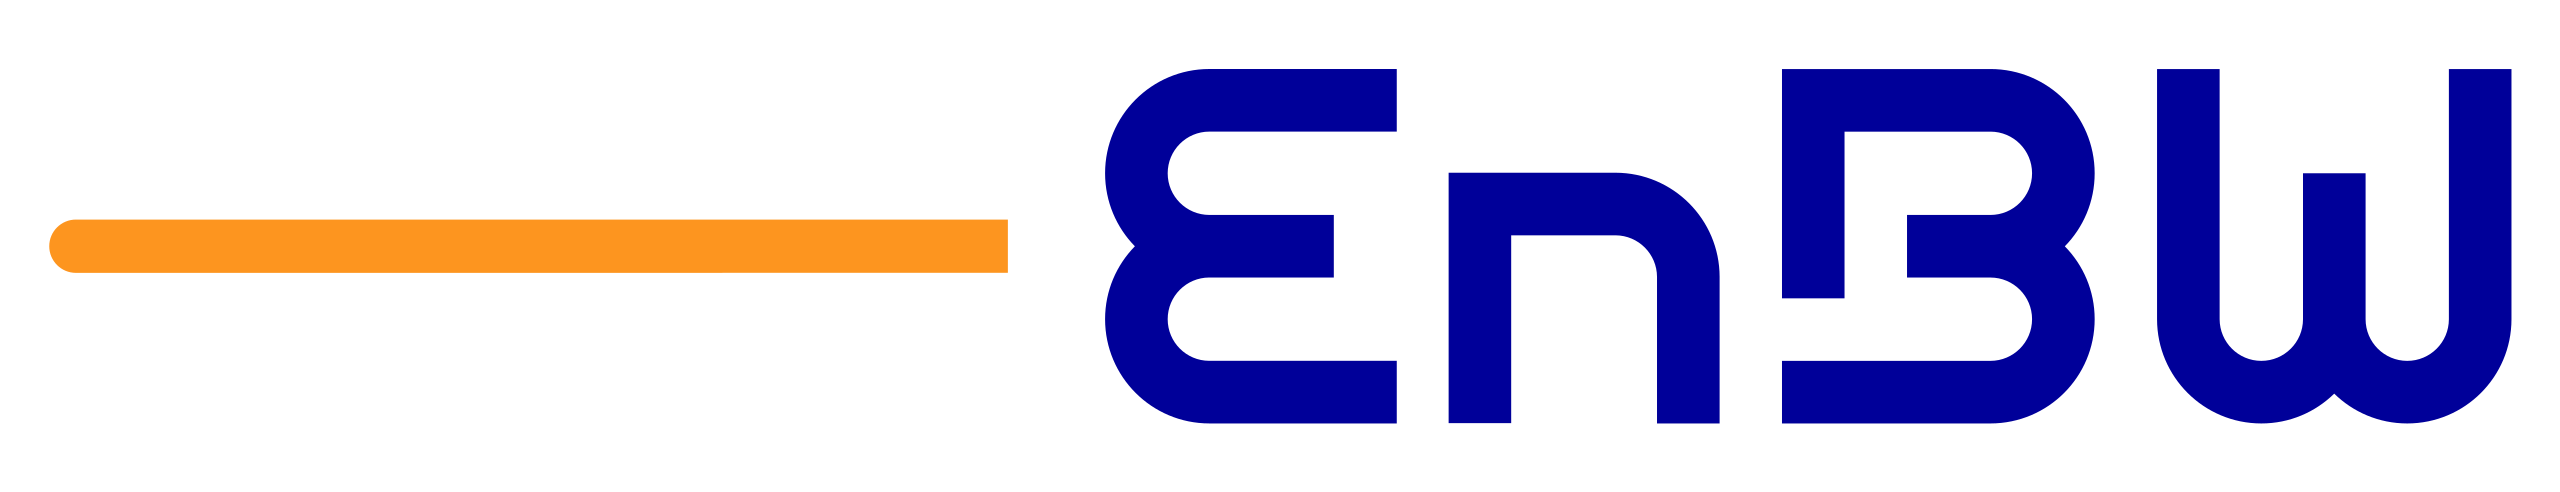 Enbw-logo